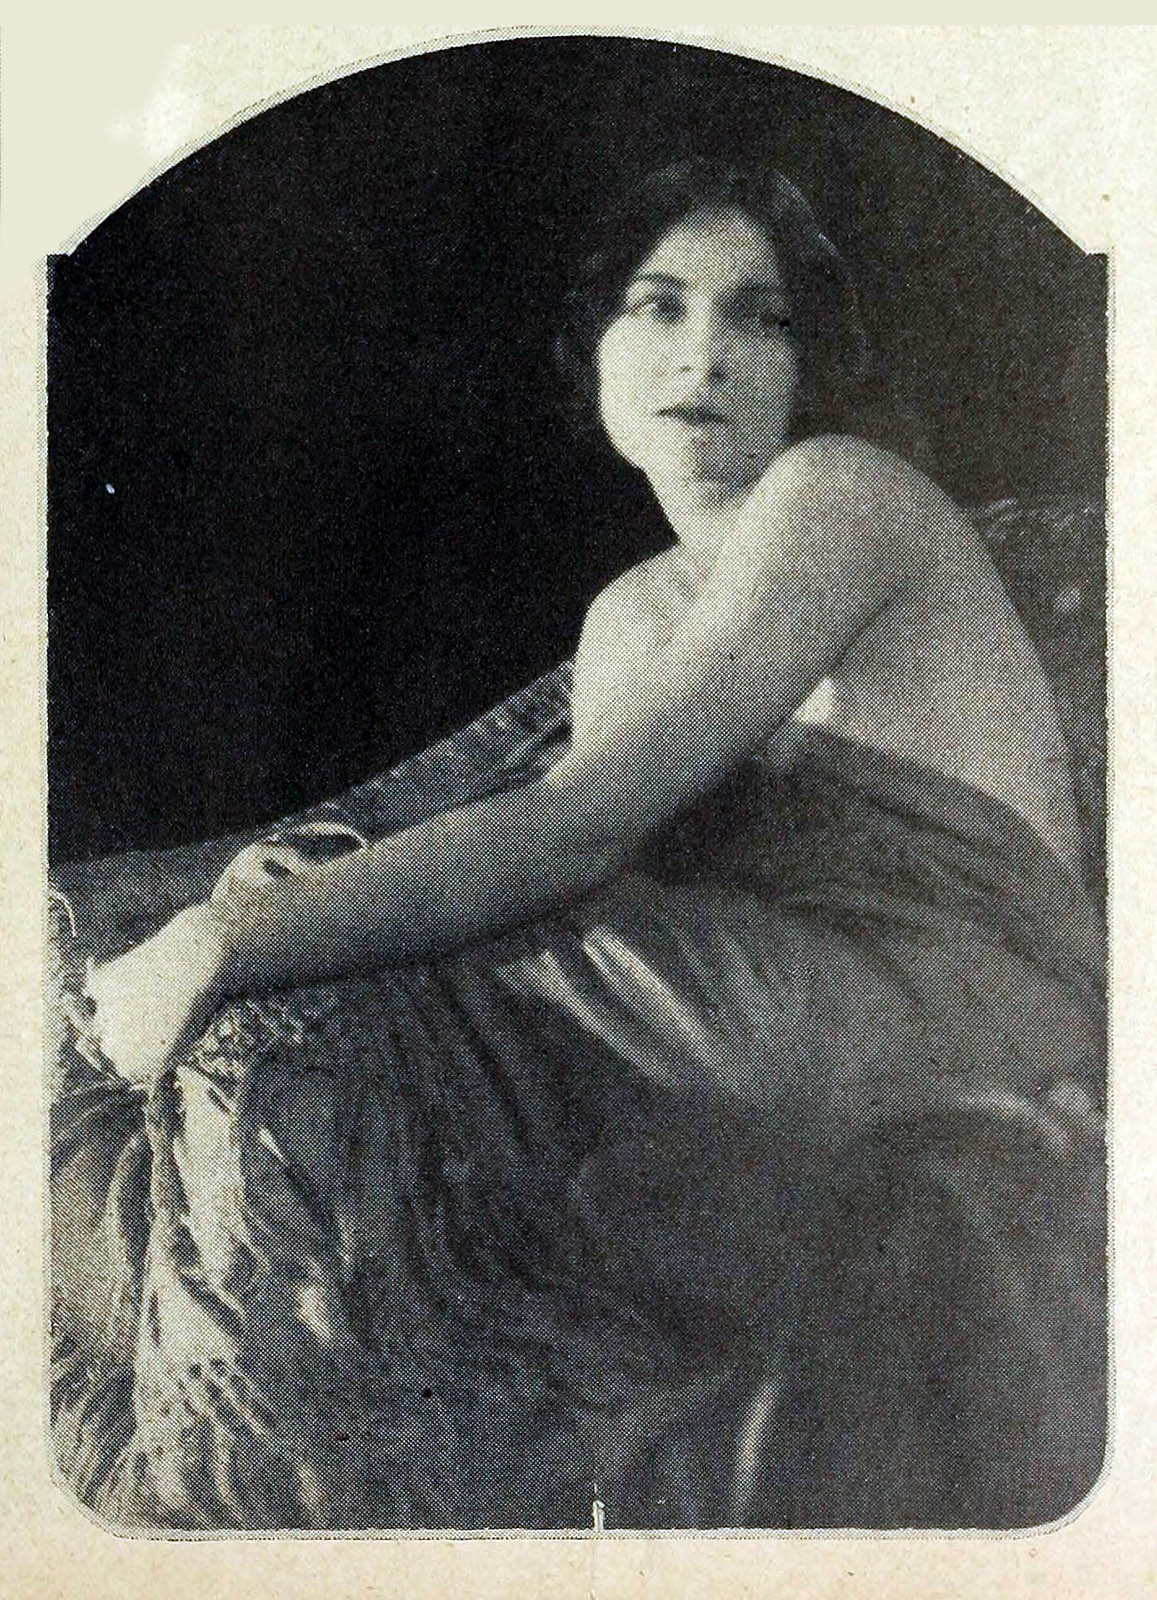 Edna Tichenor